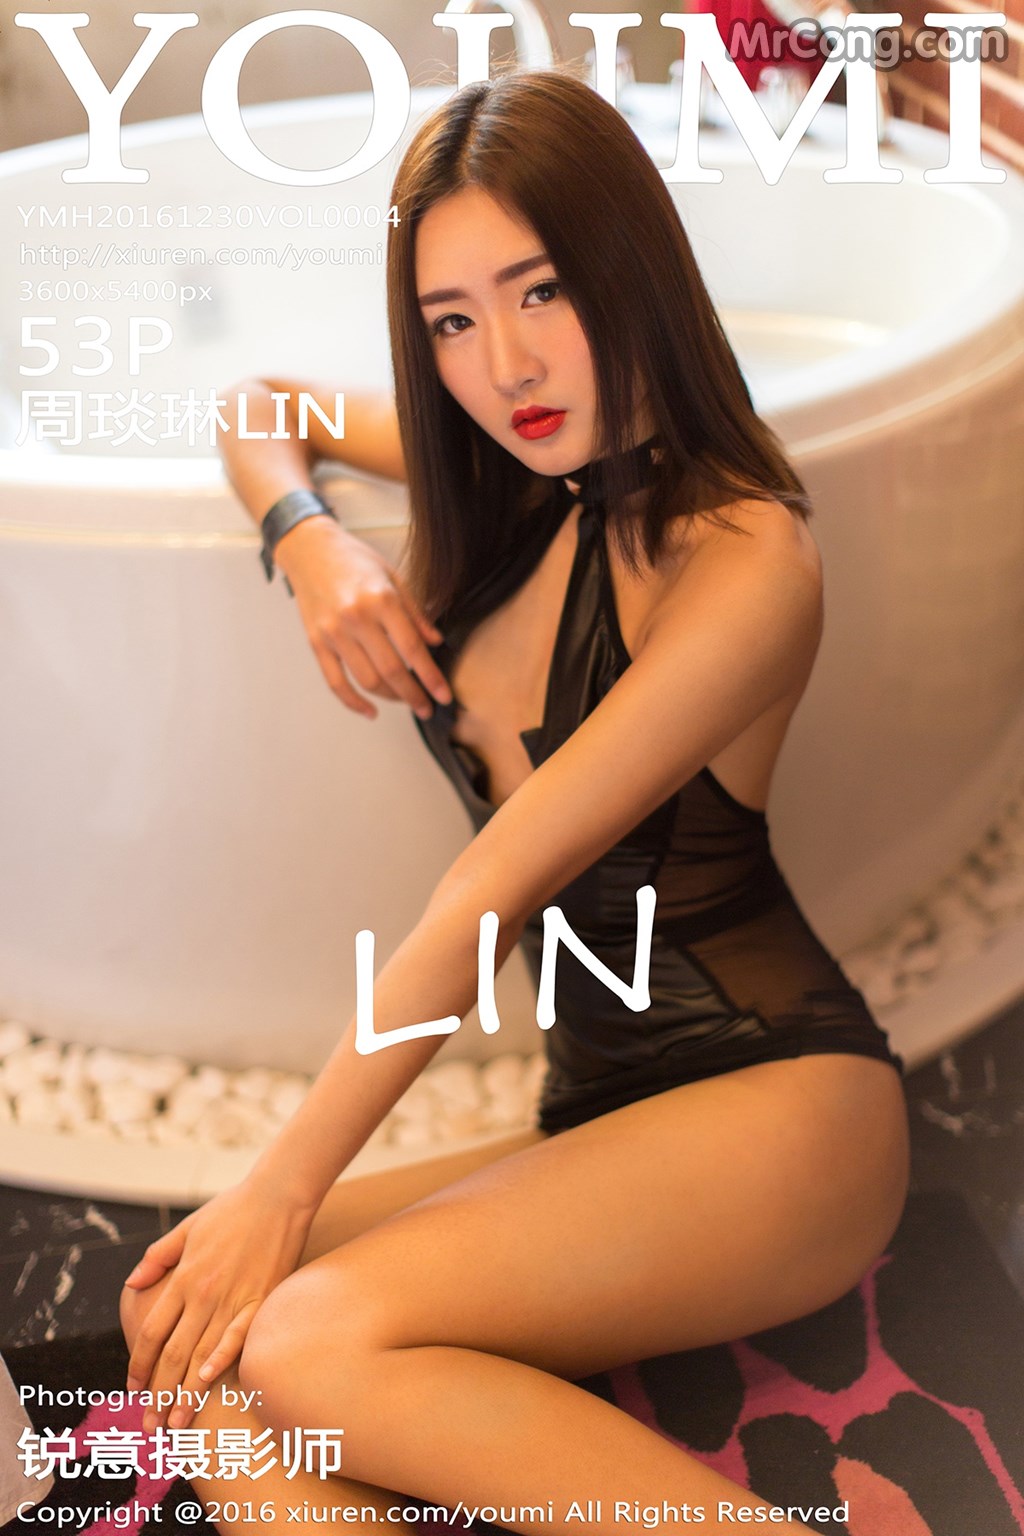 YouMi Vol. 2004: Model LIN (周琰琳) (54 photos)